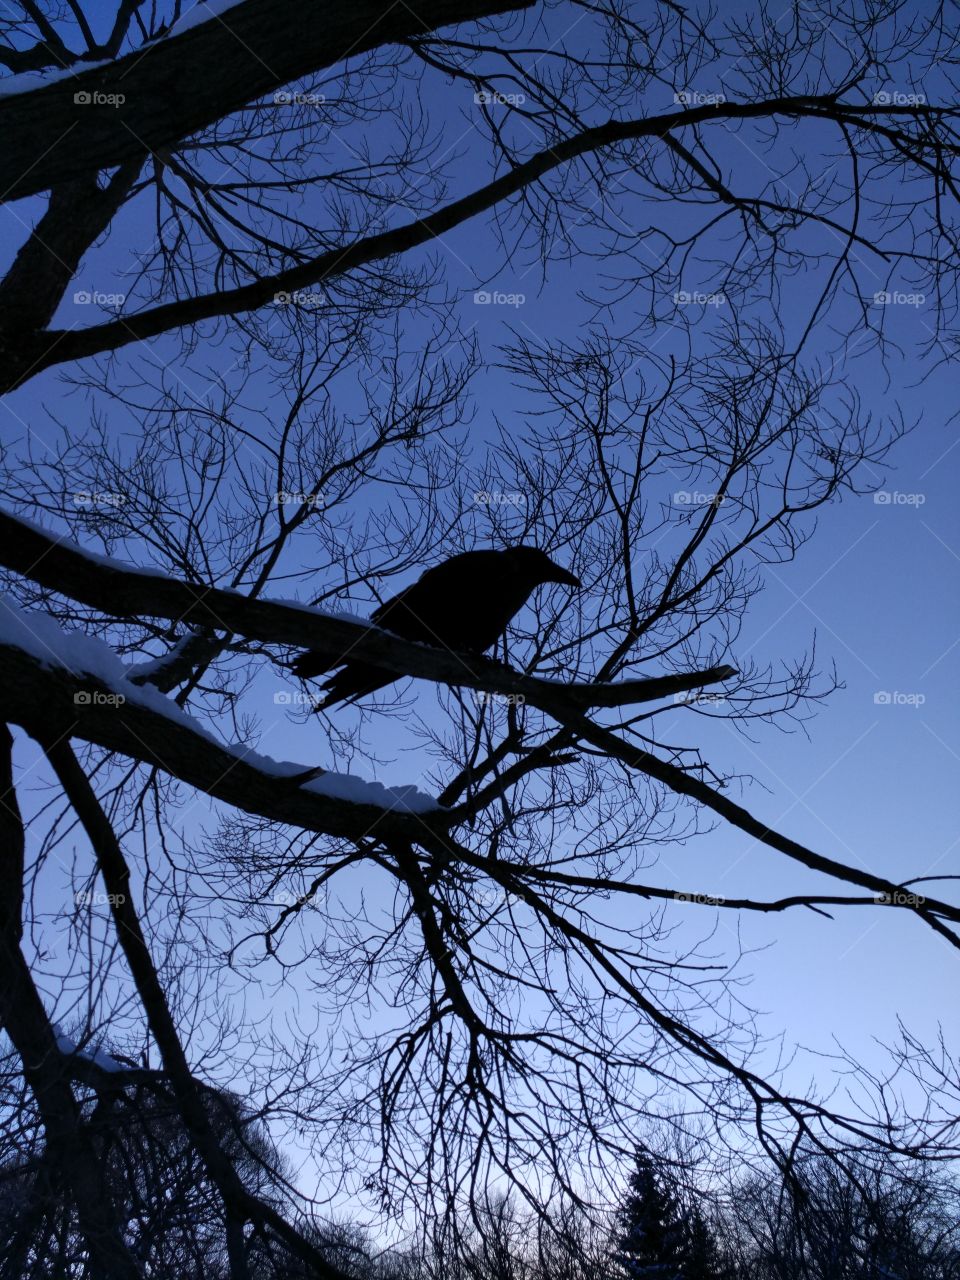 Black Raven.